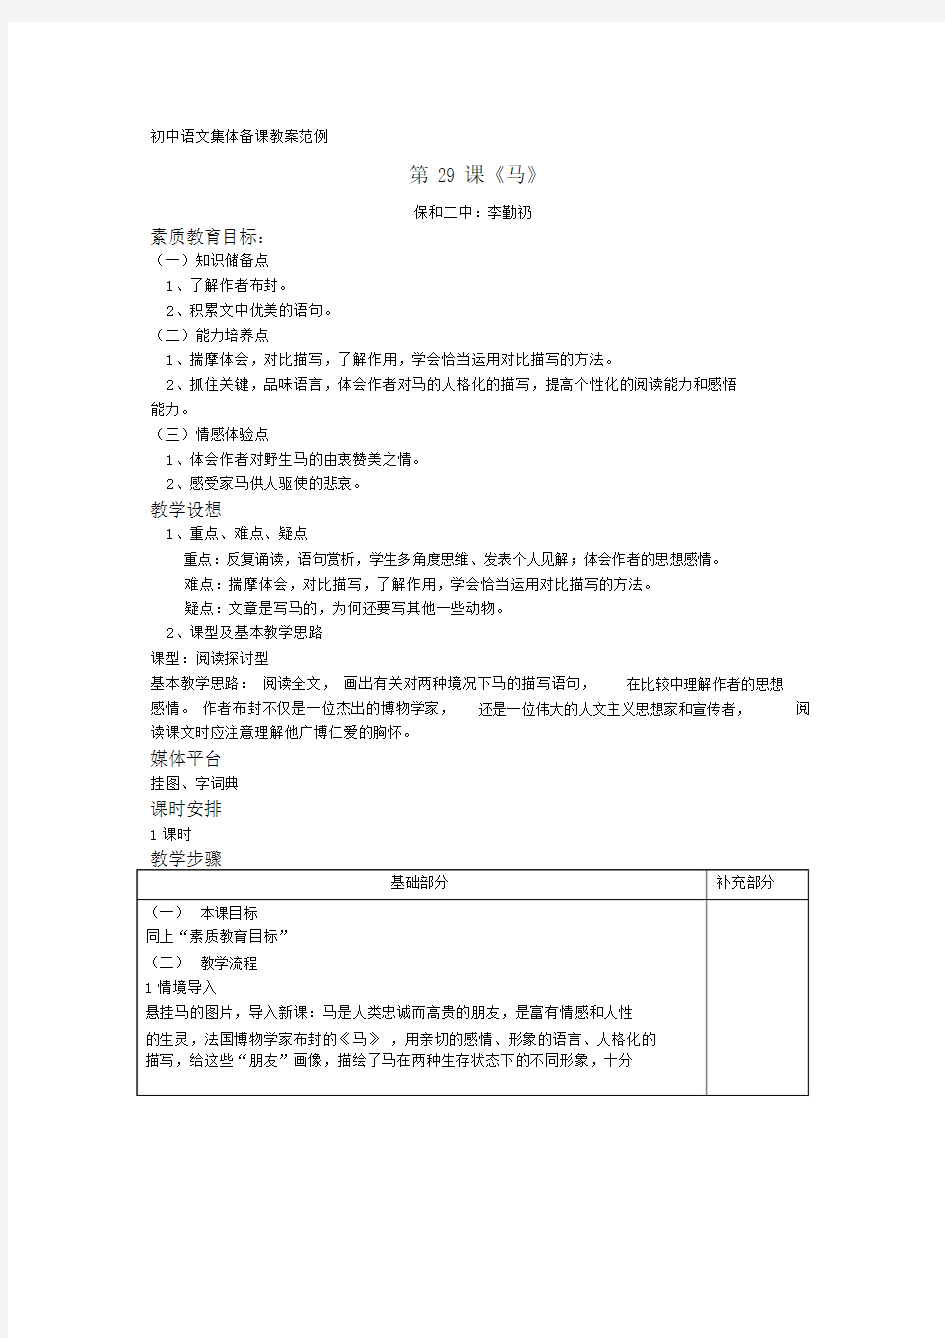 (完整版)初中语文集体备课教案范例.docx